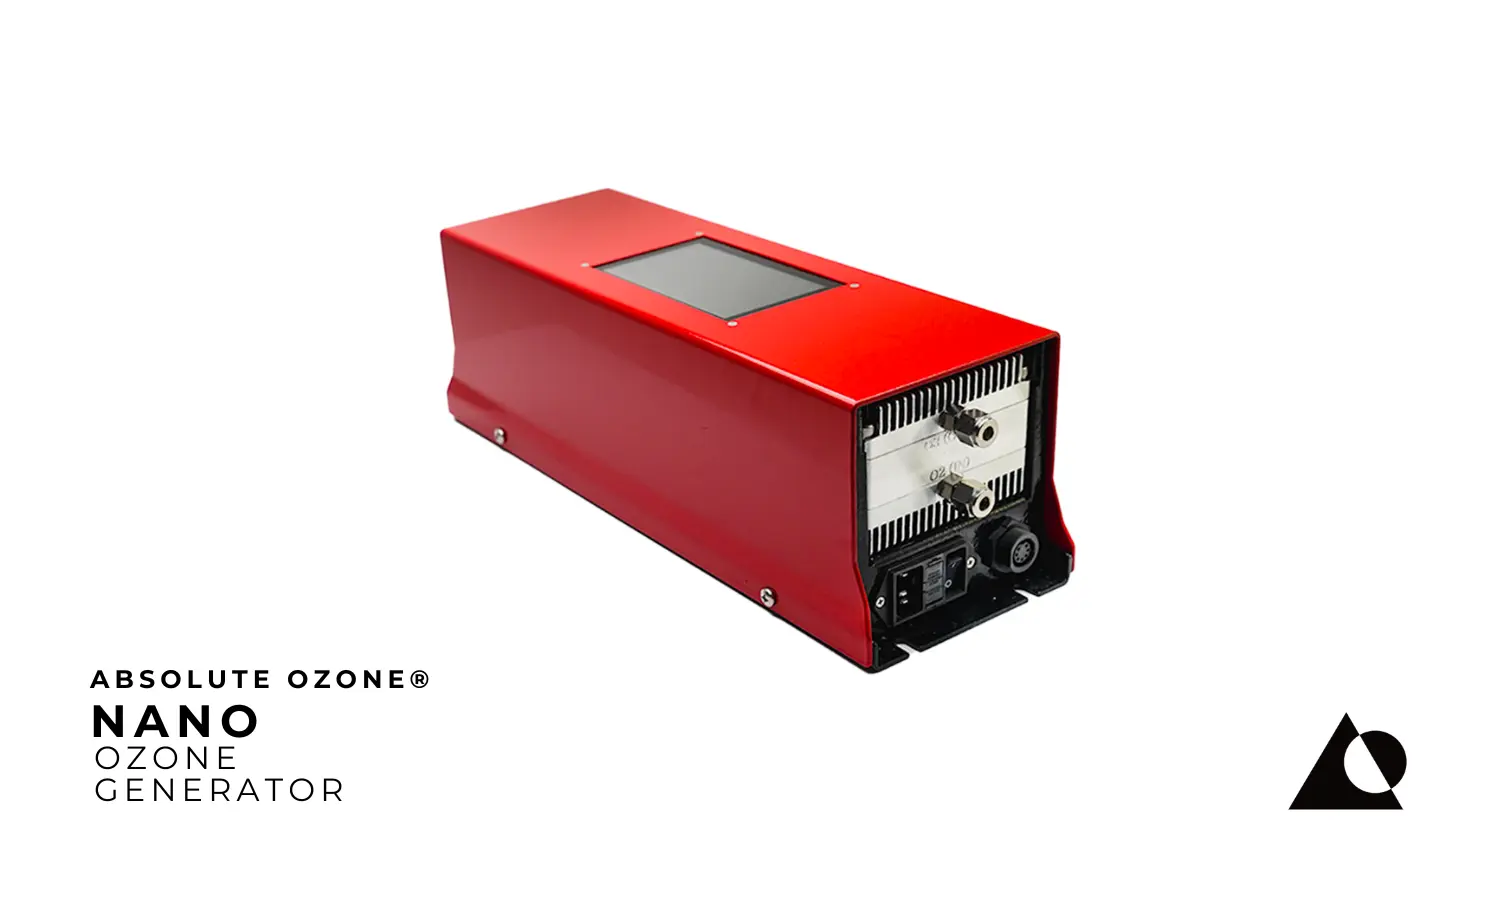 Absolute Ozone® NANO Industrial Generador de Ozono